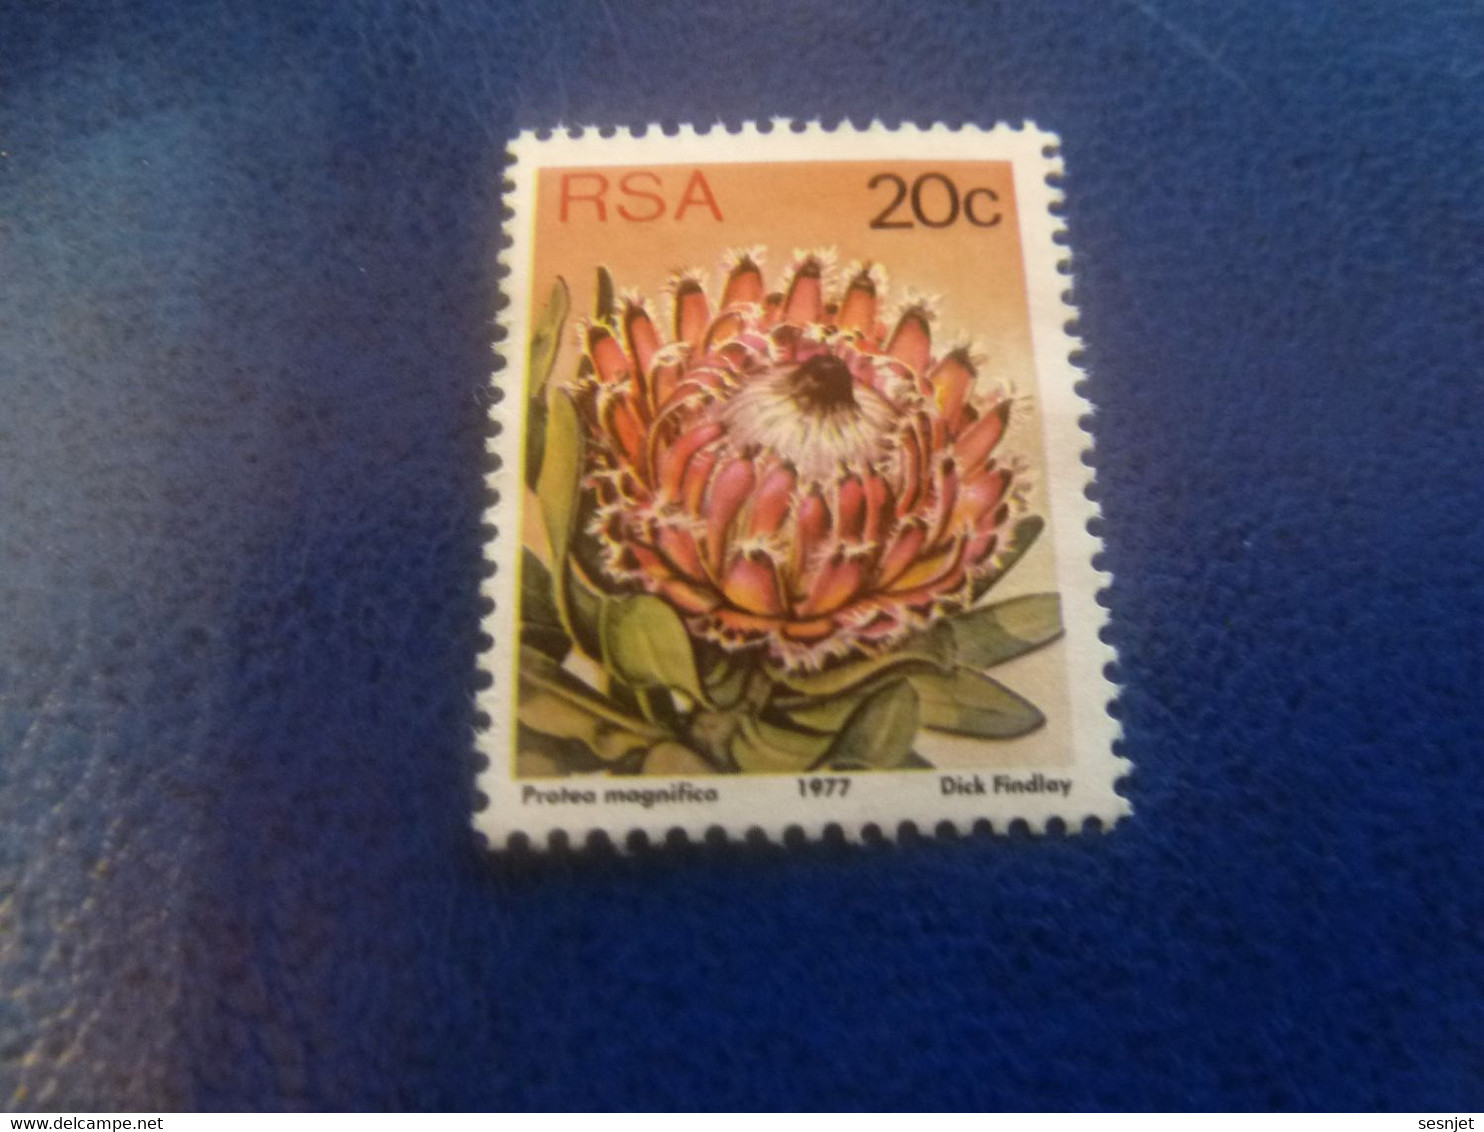 Rsa - Protea Punctata - Dick Findlay - 20 C. - Multicolore - Non Oblitéré - Année 1977 - - Gebraucht